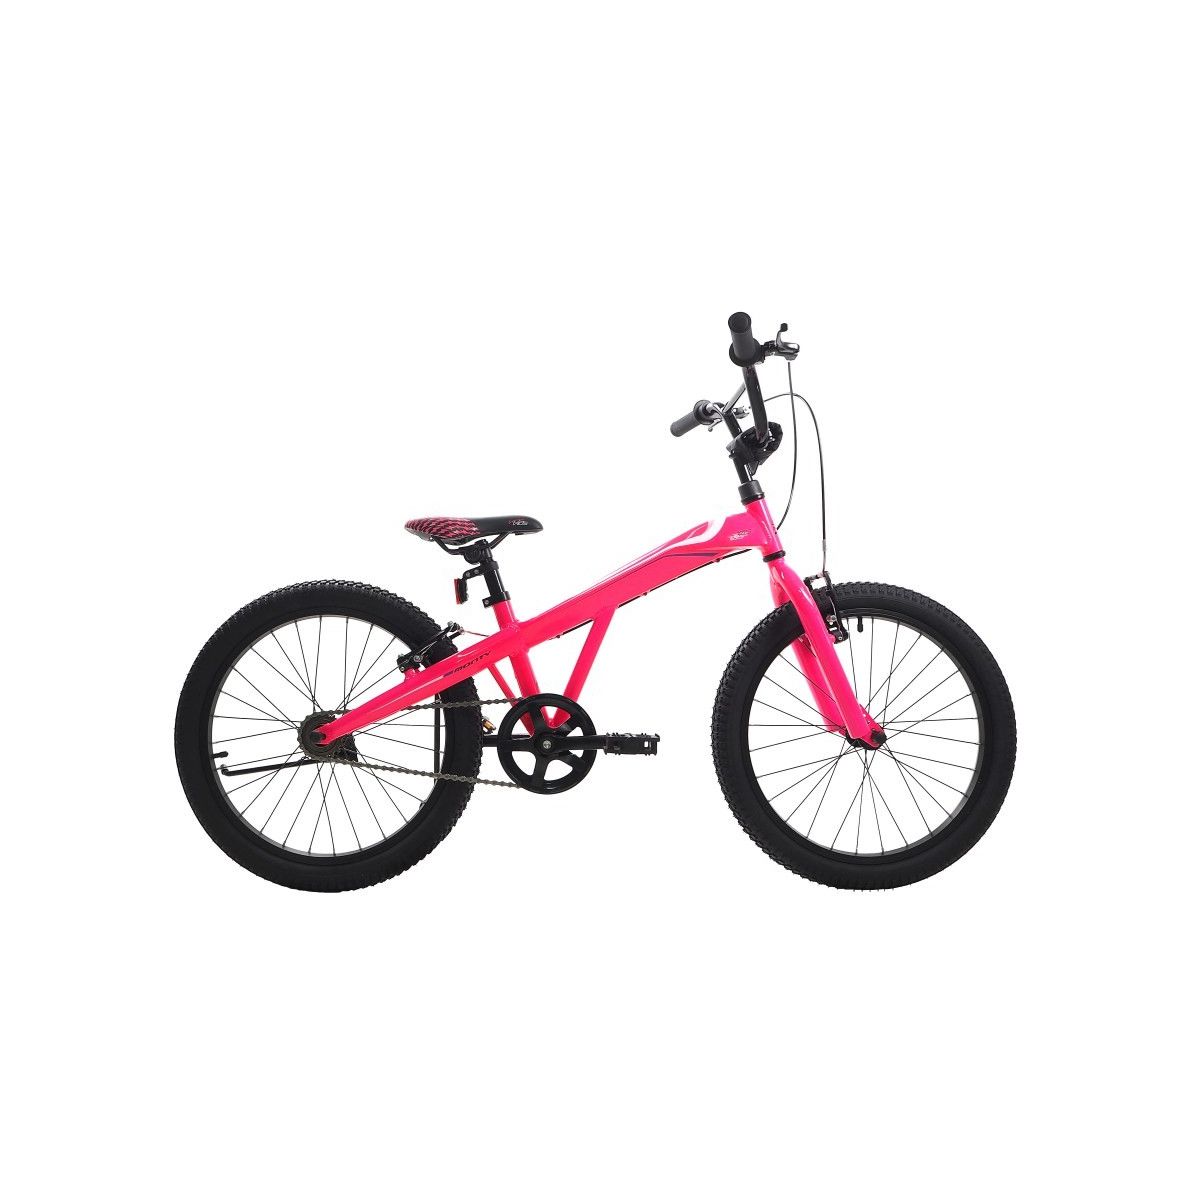 Bicicleta niño Monty 105 (5 a 7 años) 2018